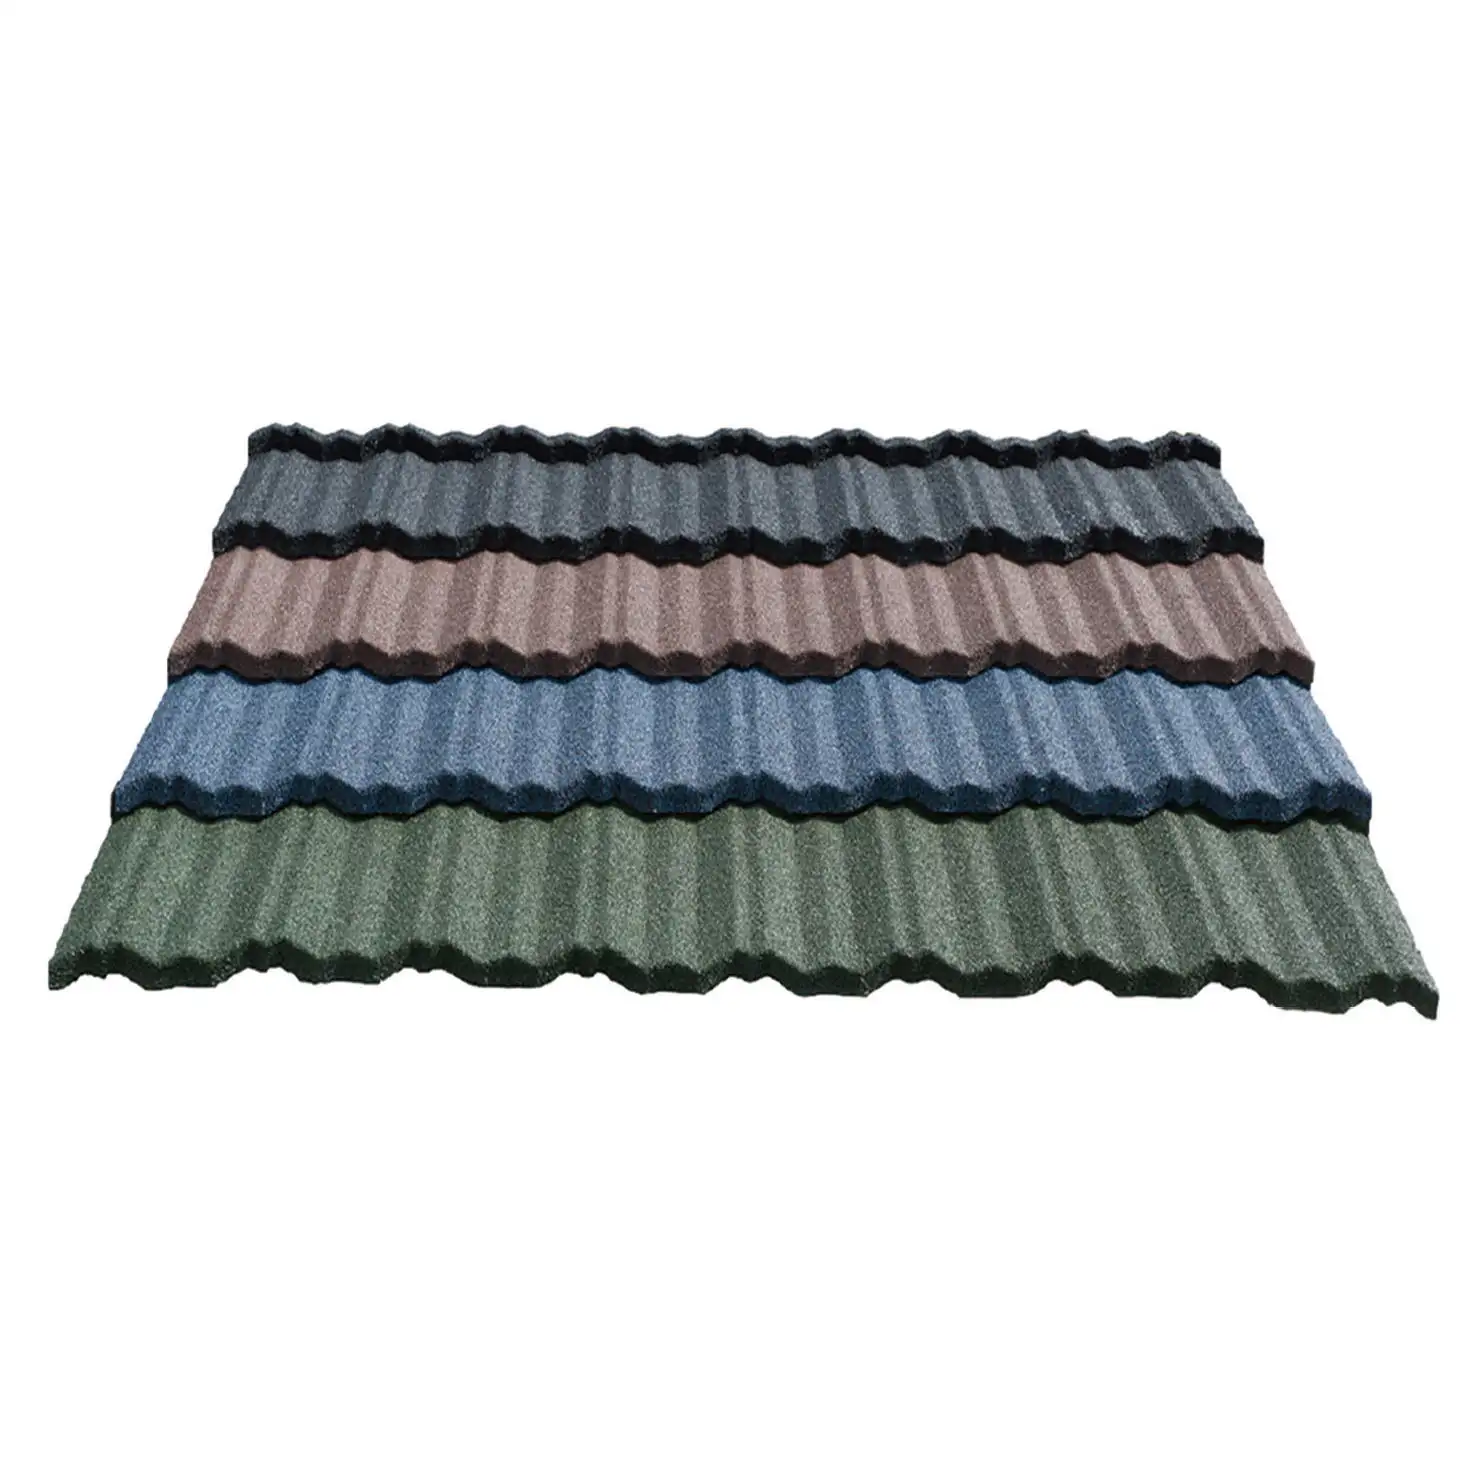 Endüstriyel tasarım Nosen renkli taş kaplanmış Metal fayans hafif alüminyum çatı malzemeleri ev Villa dış Metal Roofi